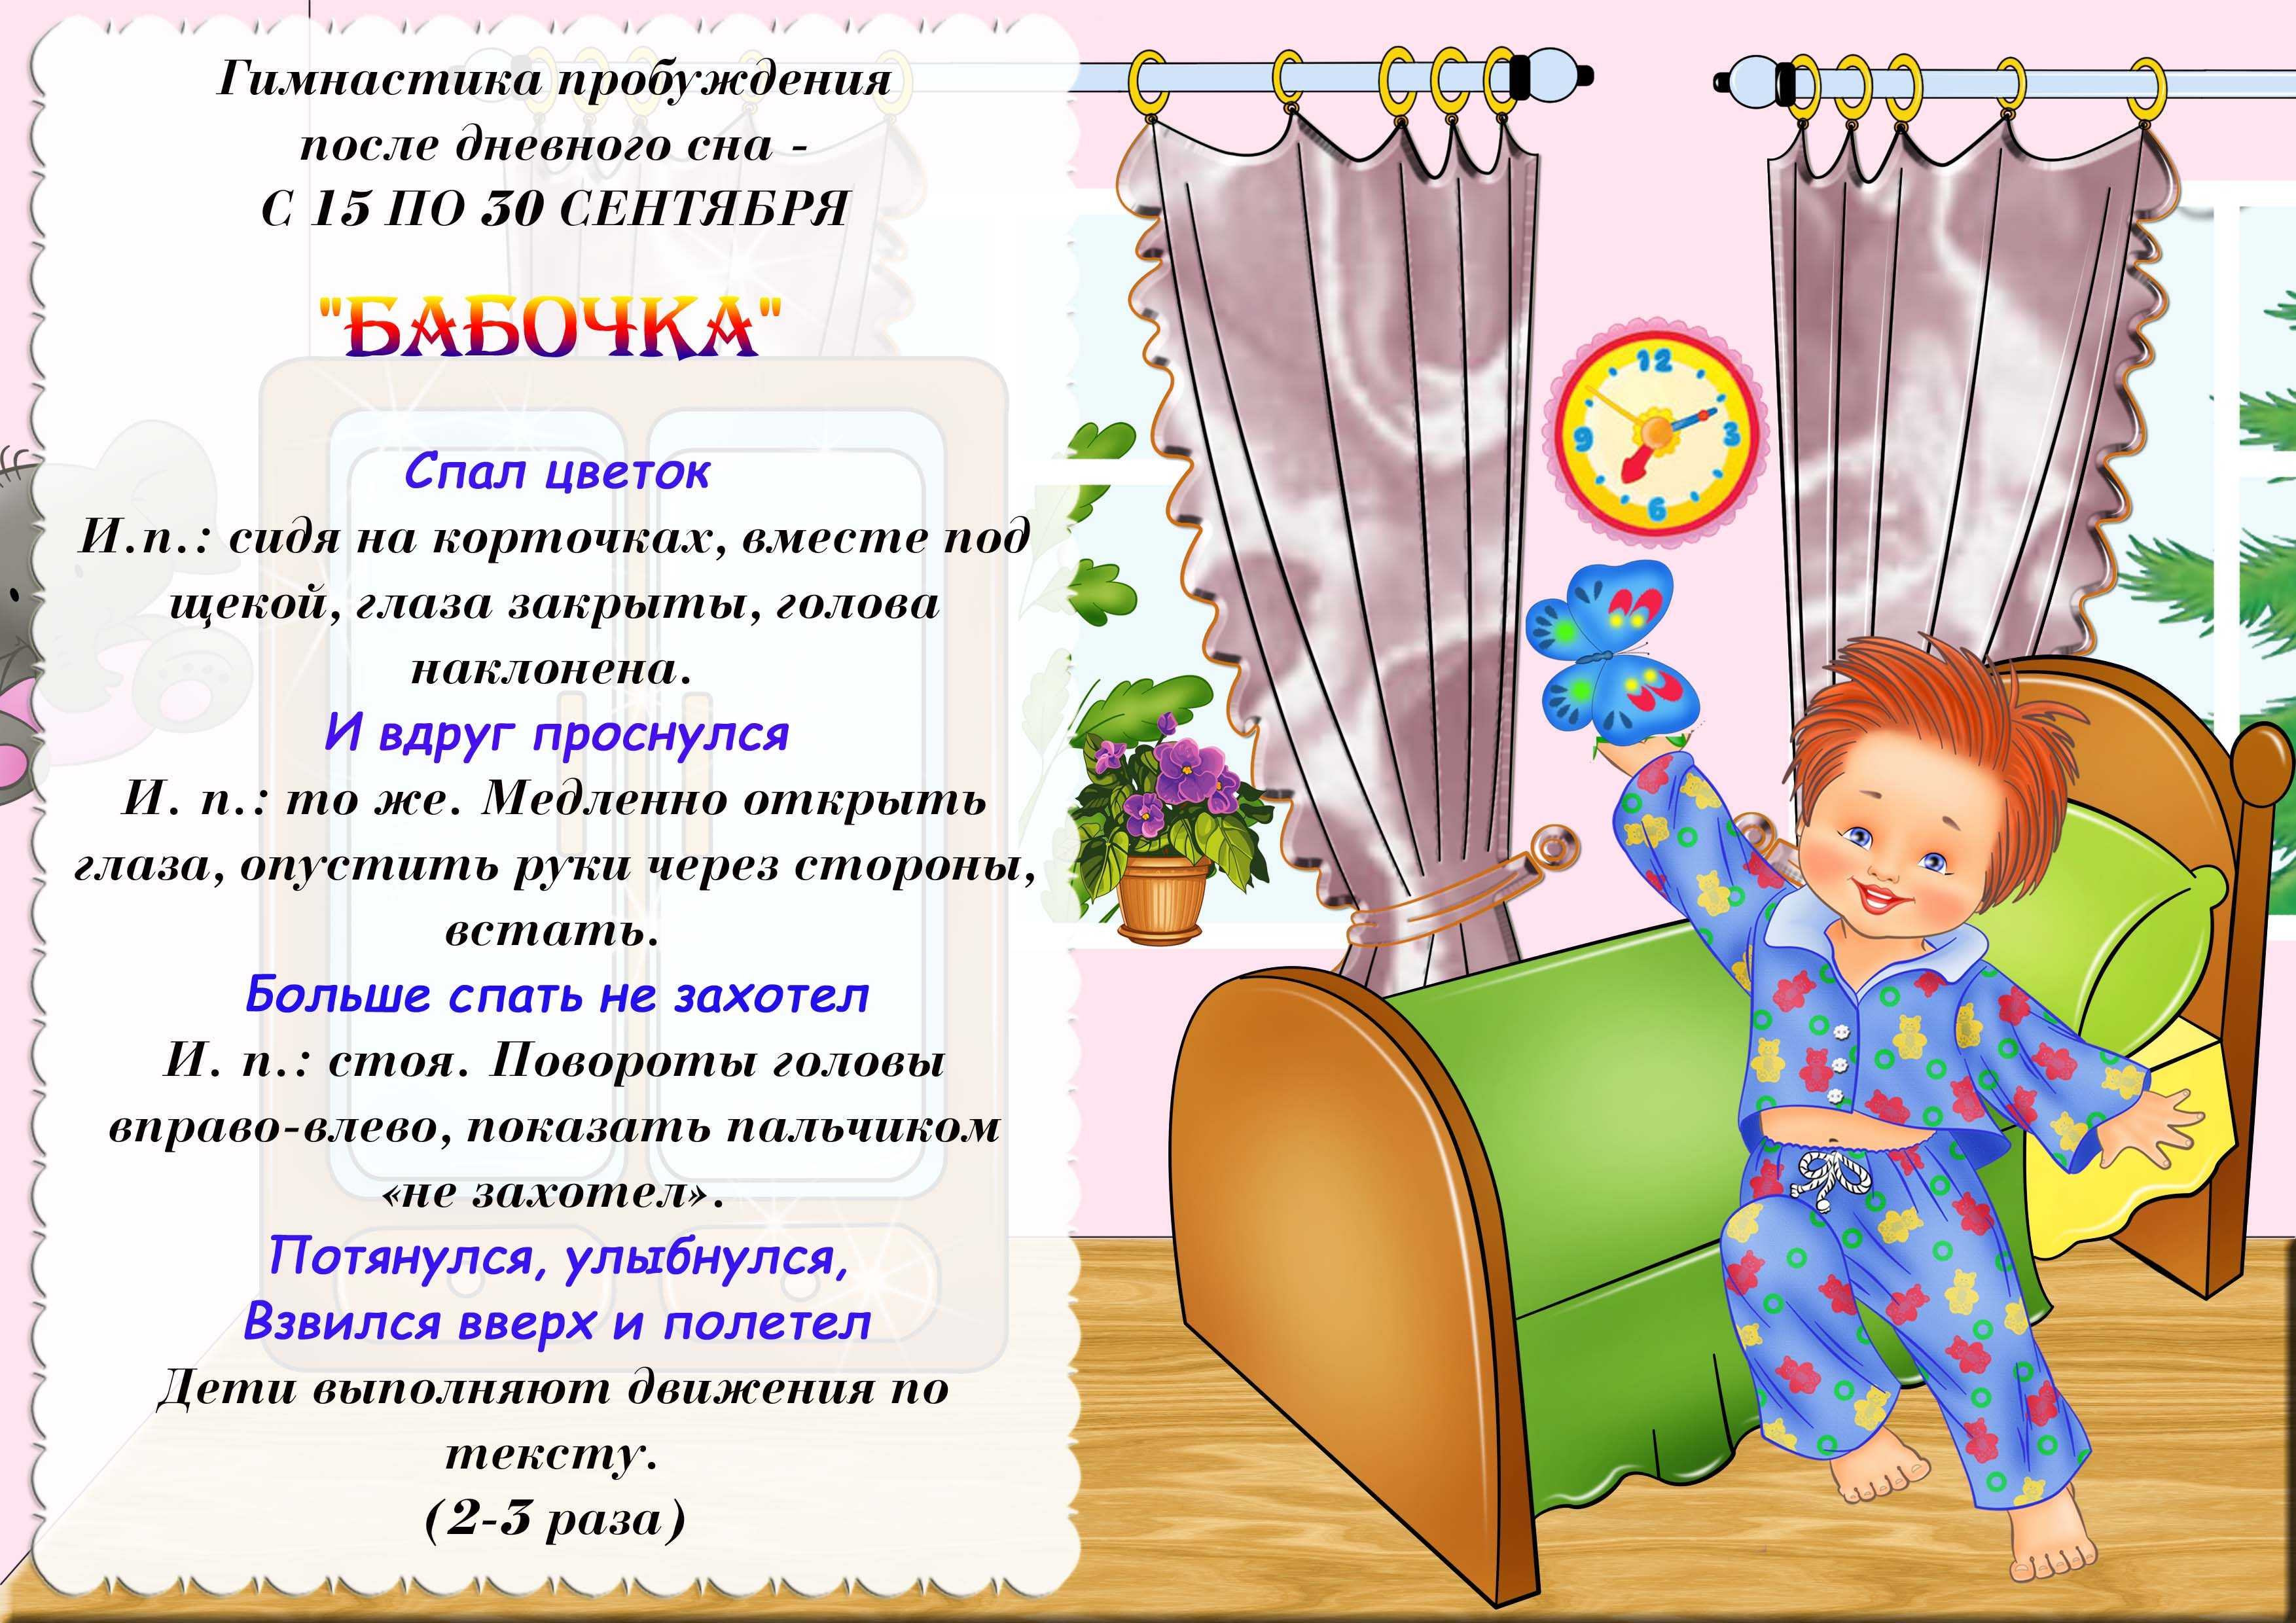 Гимнастика после сна для детей в детском саду (доу): виды и описание гимнастик для младшей, средней и старшей группы.